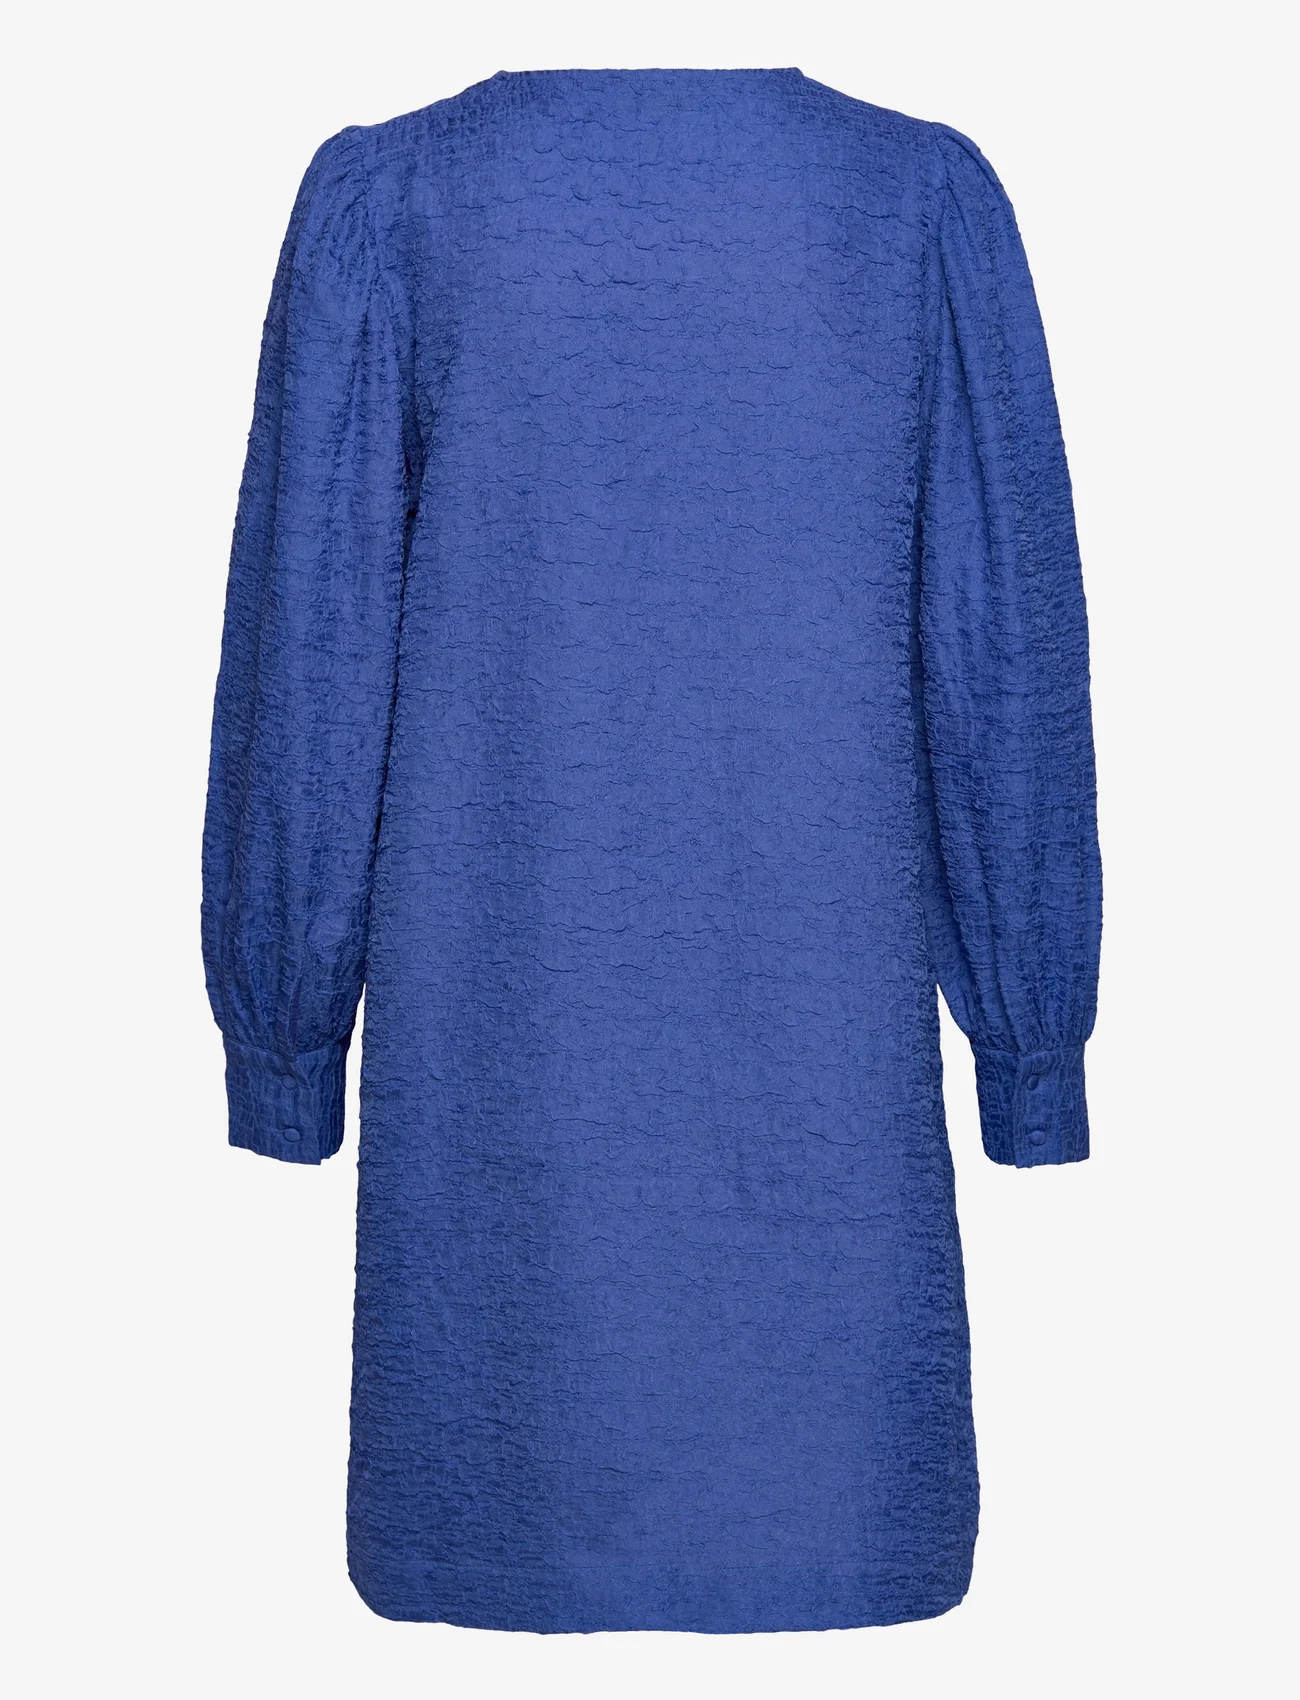 Modström - BisouMD dress - korte jurken - bright ocean - 1